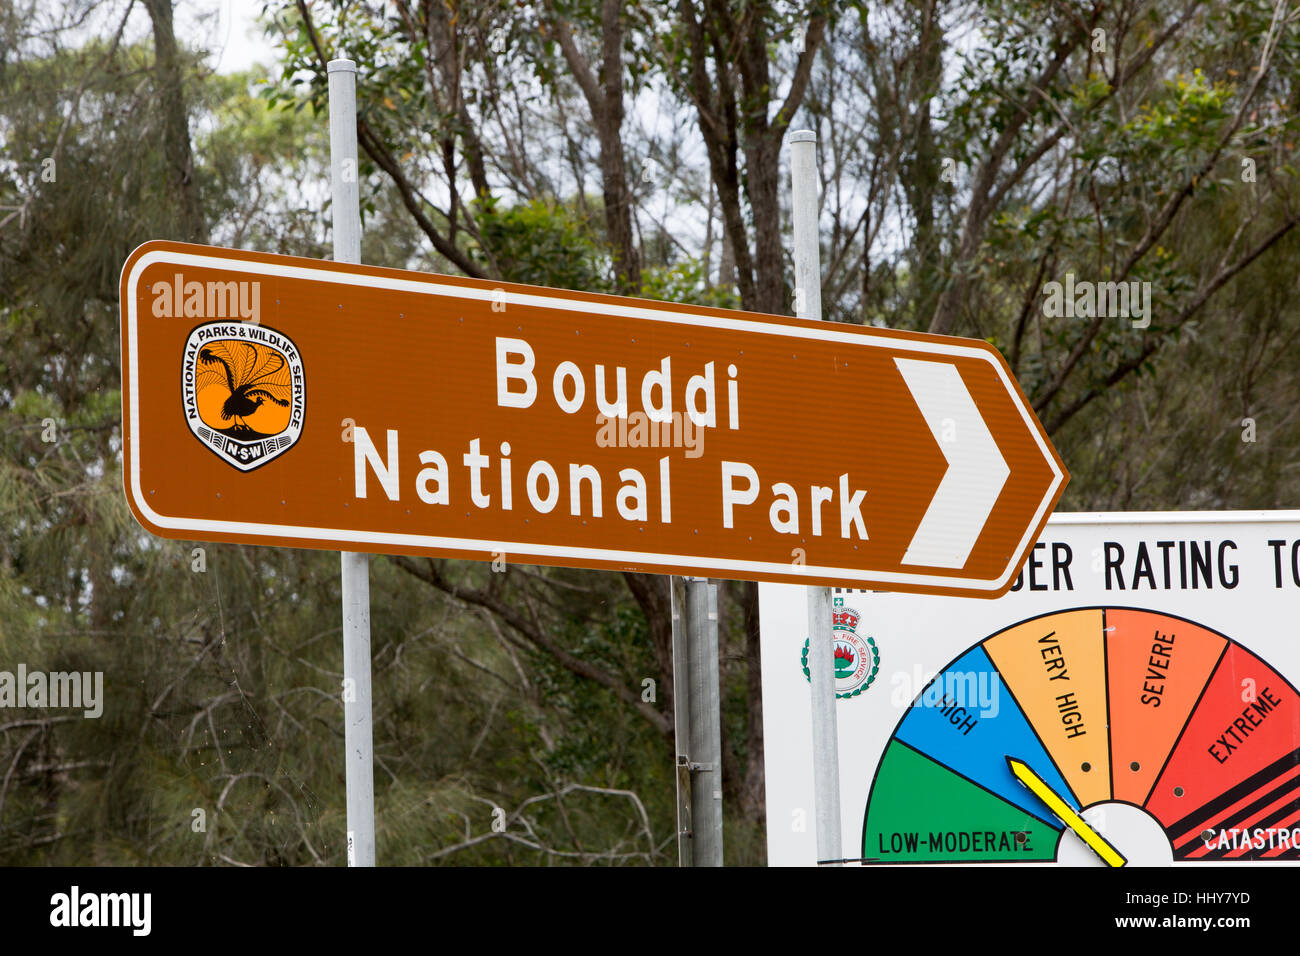 Bouddi National Park signe sur la côte centrale de la Nouvelle-Galles du Sud, Australie Banque D'Images